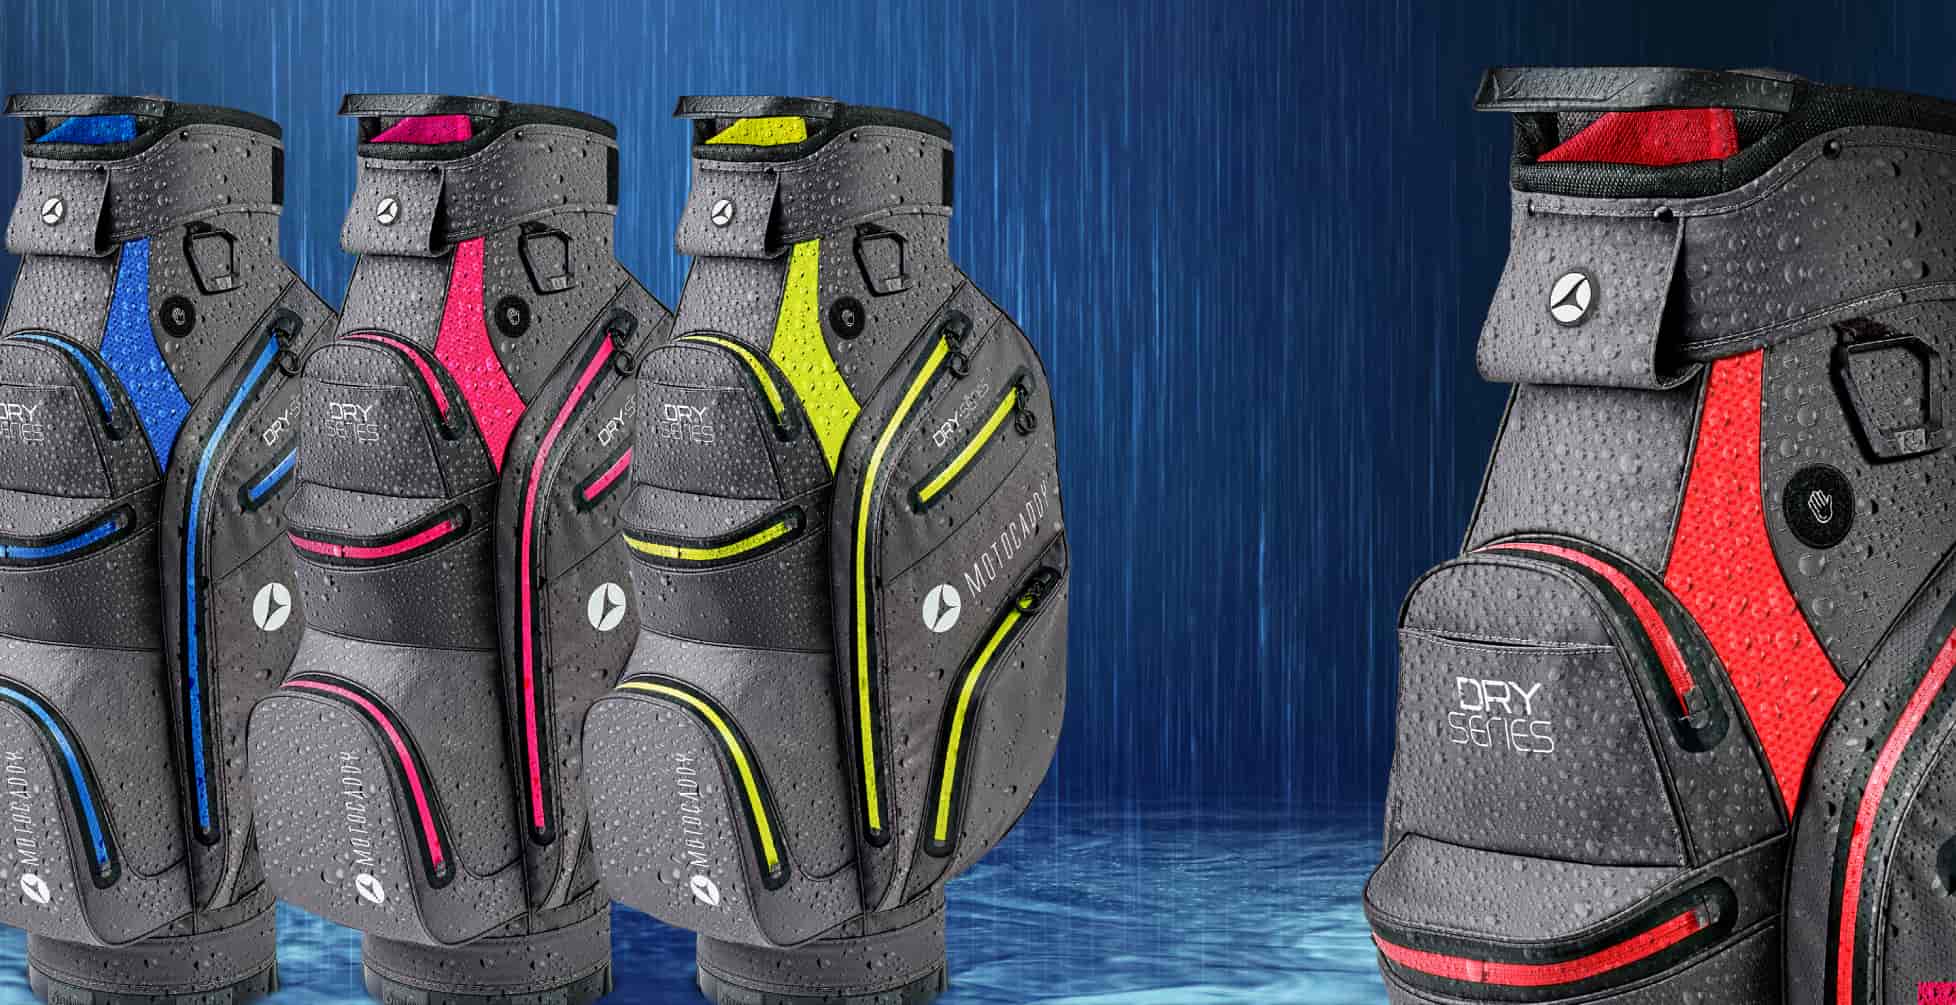 Motocaddy Dry Series waterproof golf bag